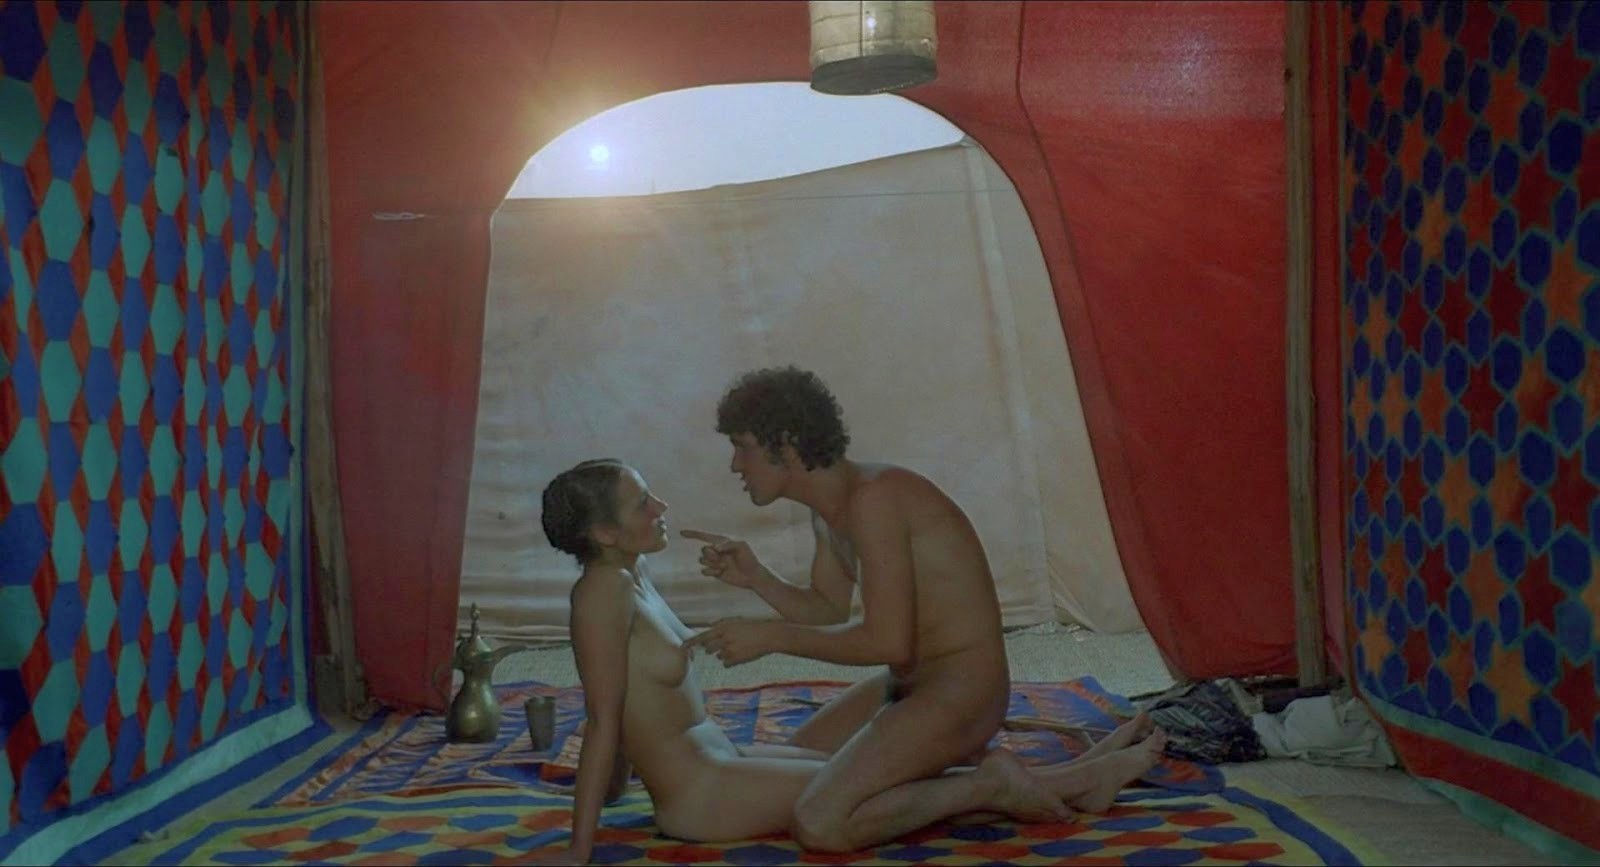 Ninetto Davoli nudo ne "Il fiore delle mille e una notte" (1974) ...